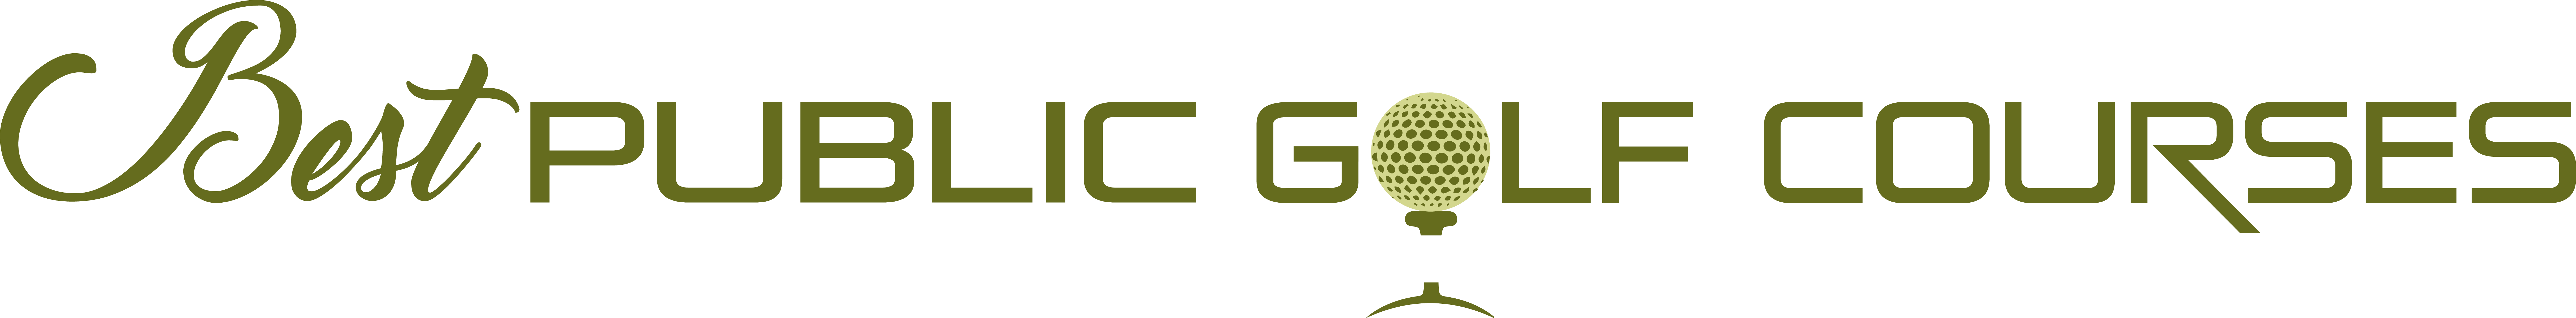 Best Public Golf Courses